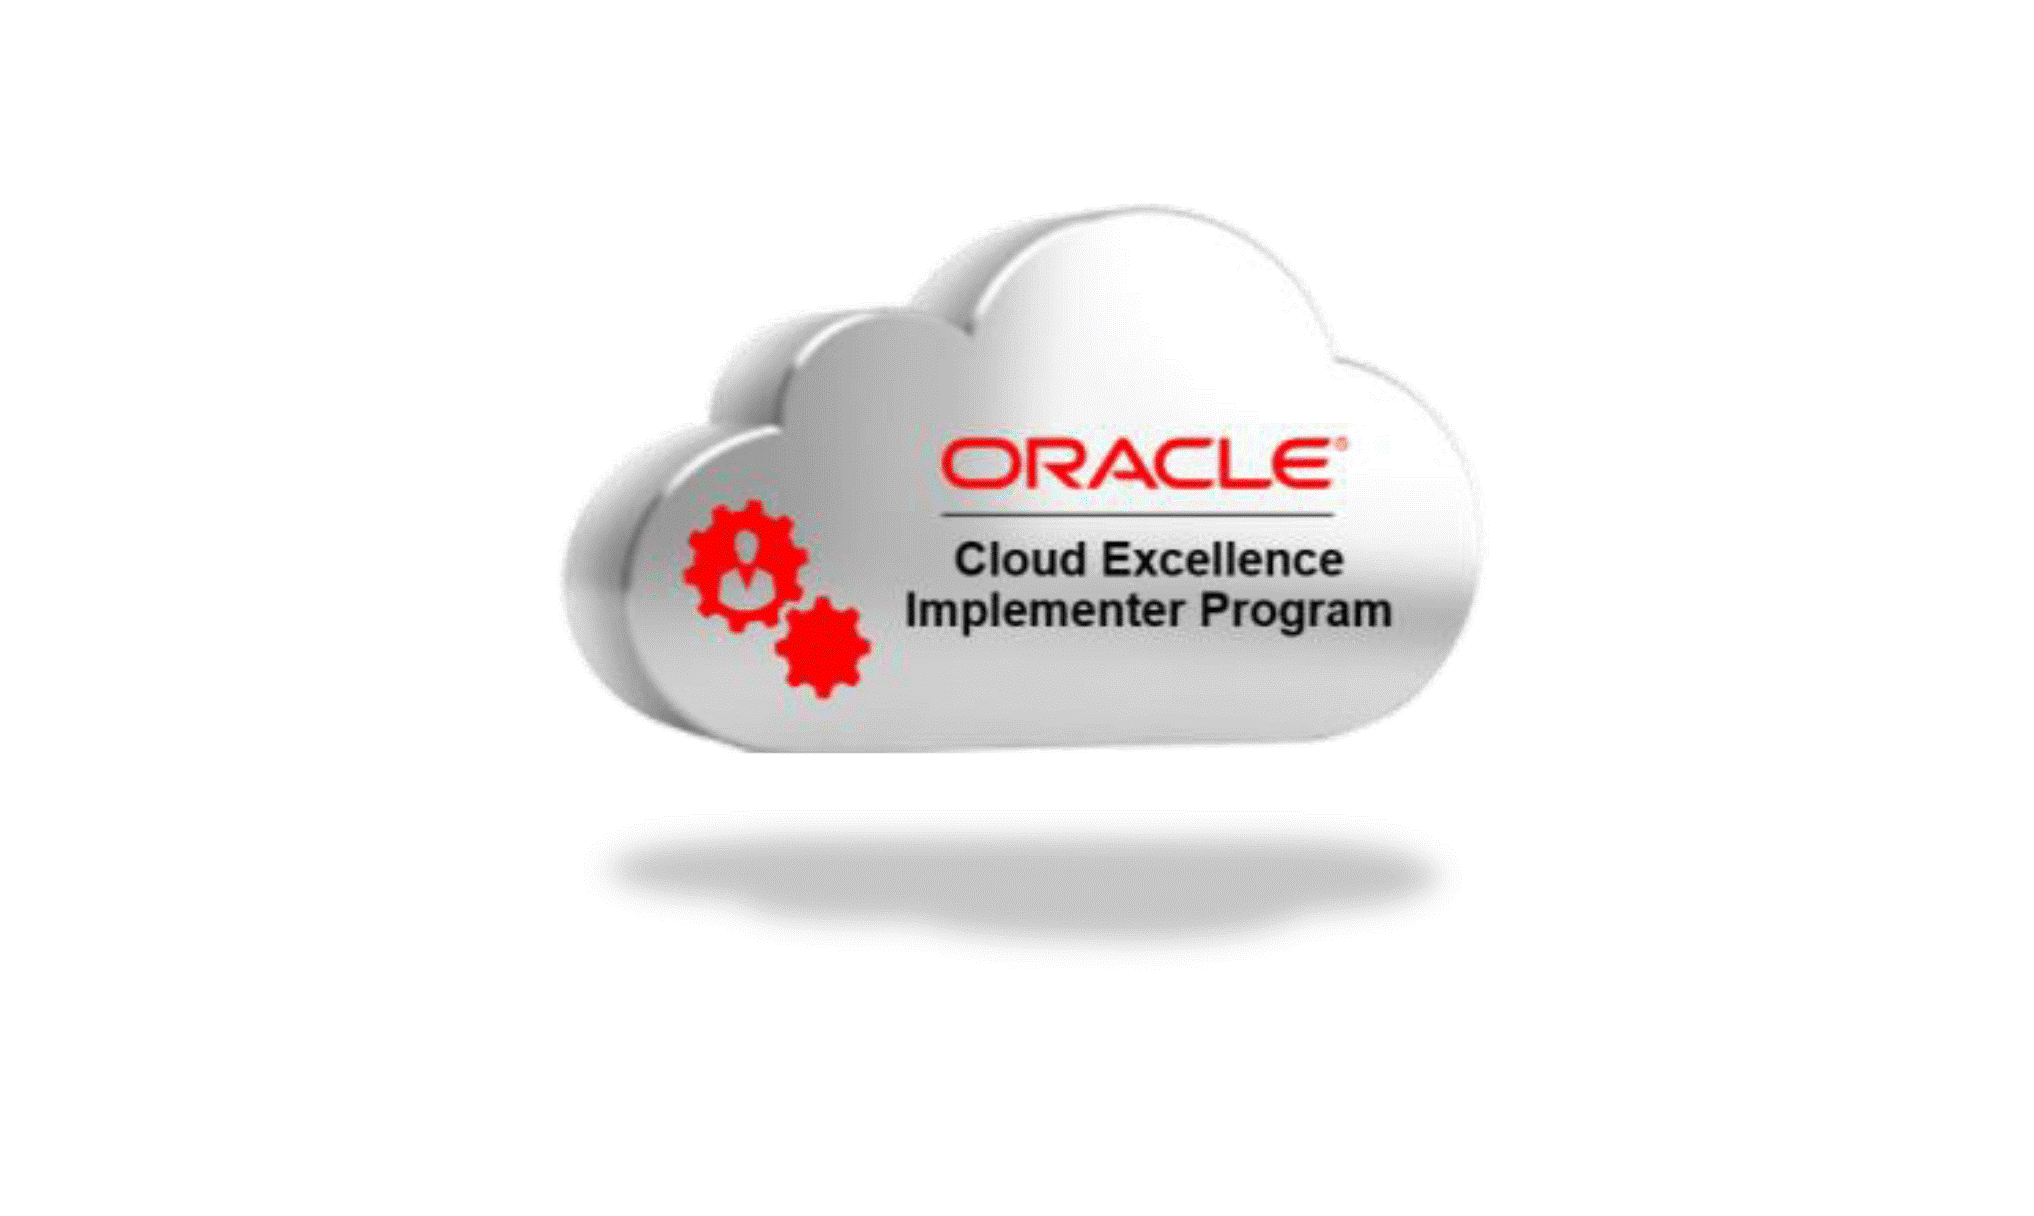 Cloud Excellence Implementer Program